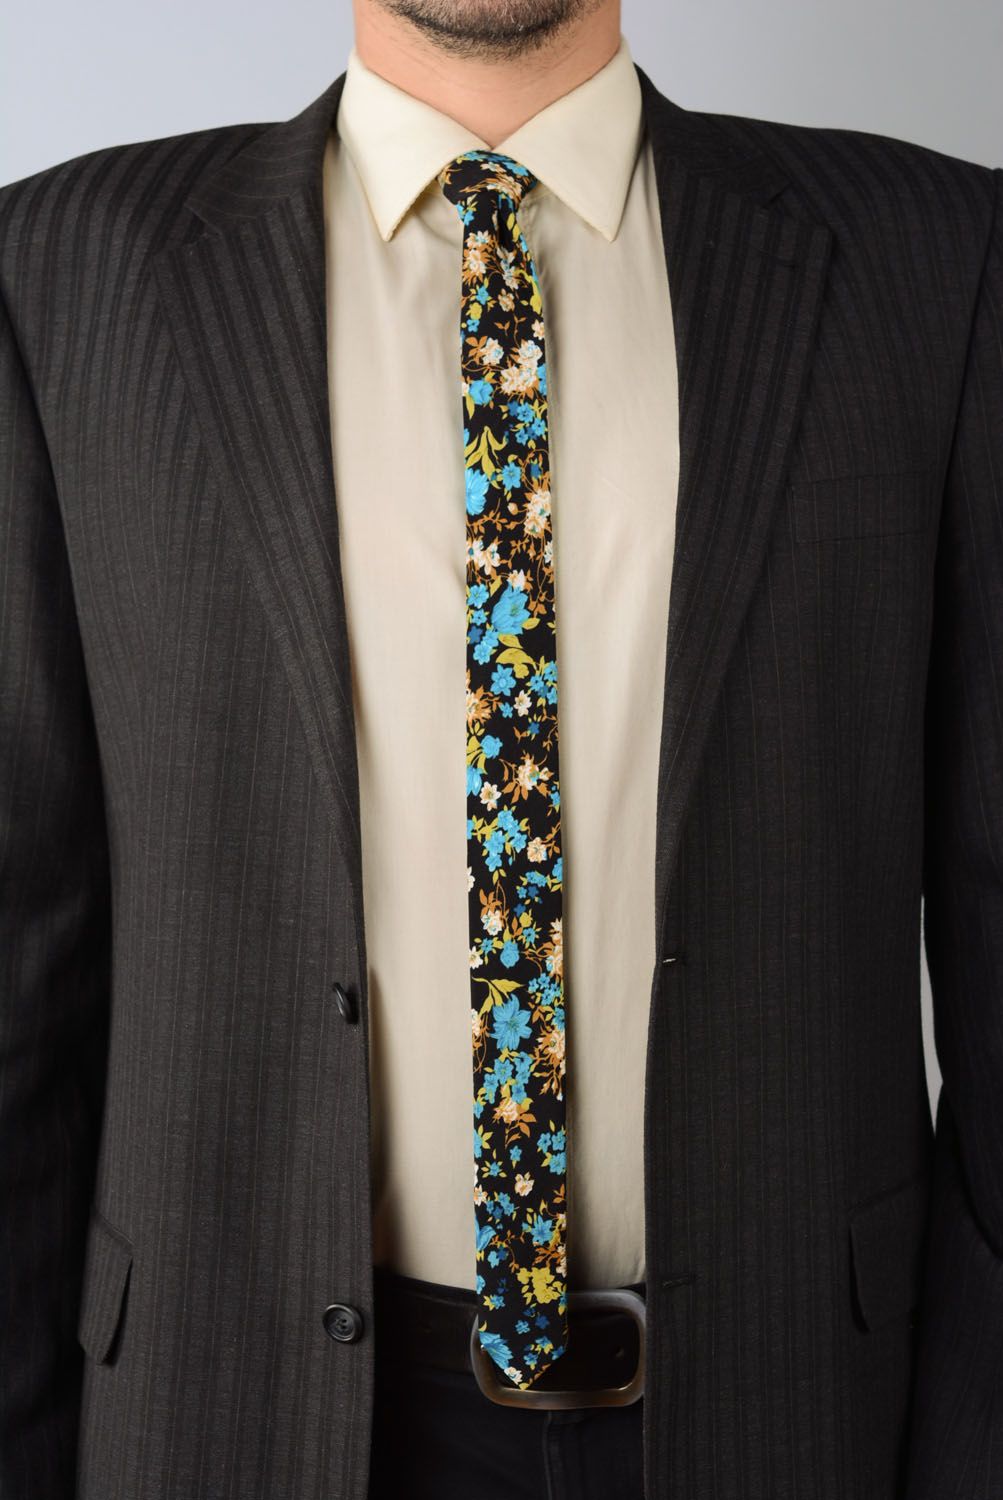 Cravate en viscose avec fleurs faite main photo 1